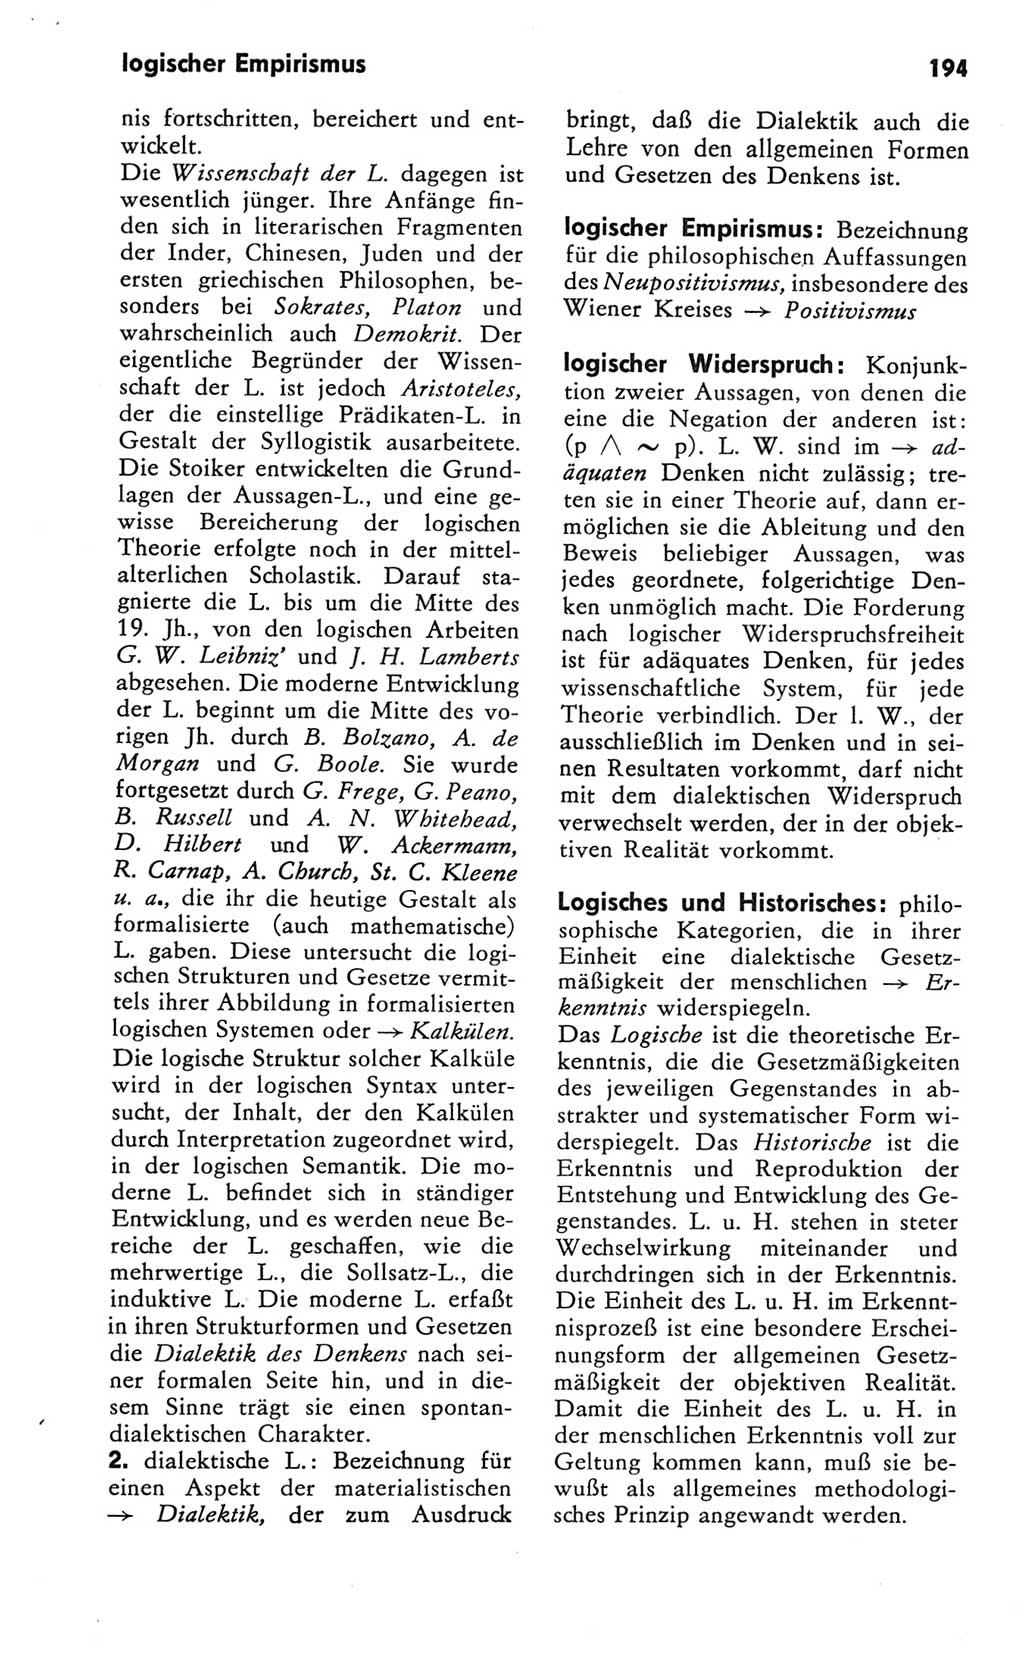 Kleines Wörterbuch der marxistisch-leninistischen Philosophie [Deutsche Demokratische Republik (DDR)] 1981, Seite 194 (Kl. Wb. ML Phil. DDR 1981, S. 194)